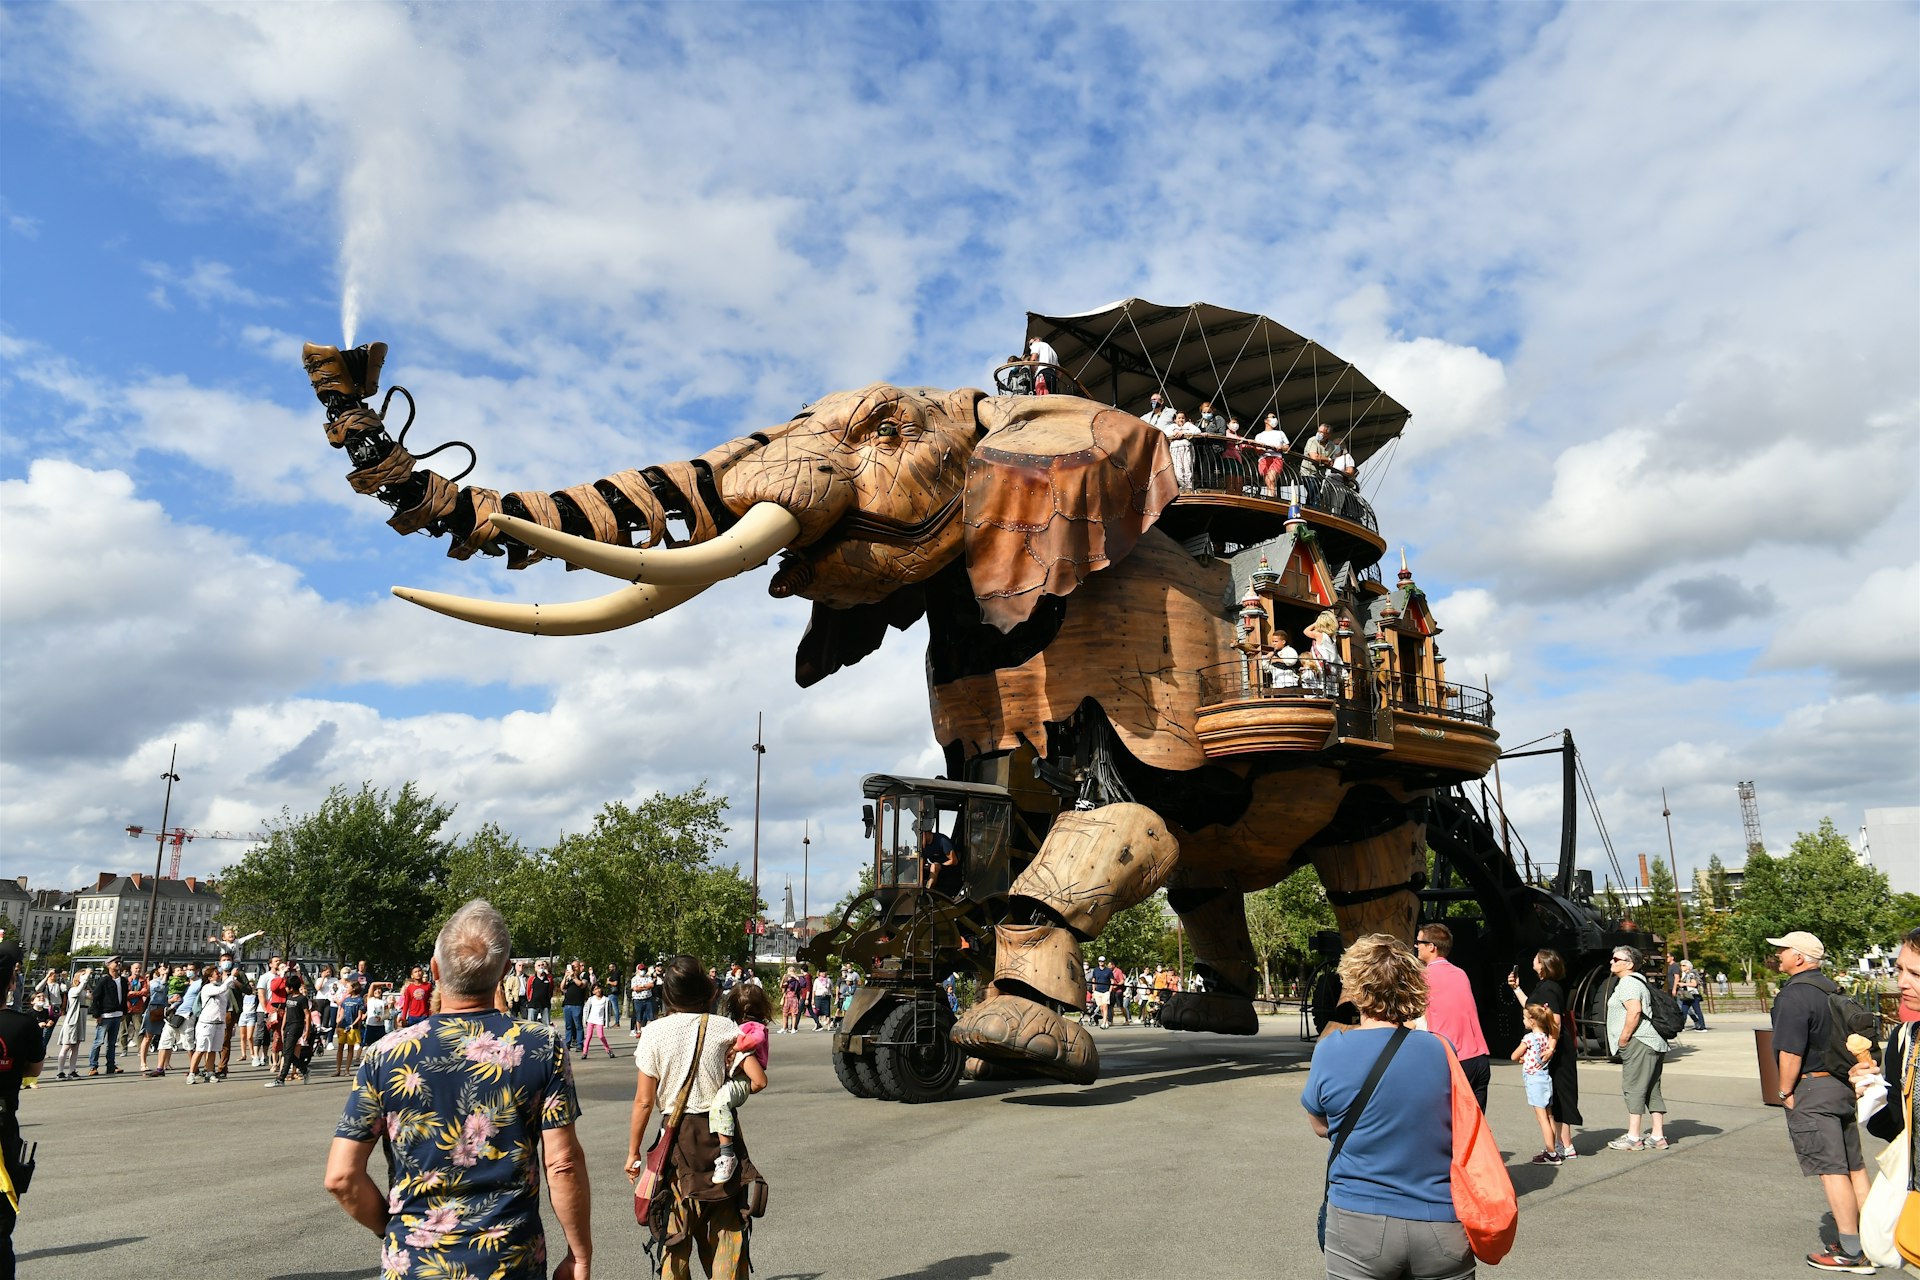 The giant elephant at Les Machines de l’île, Nantes, France